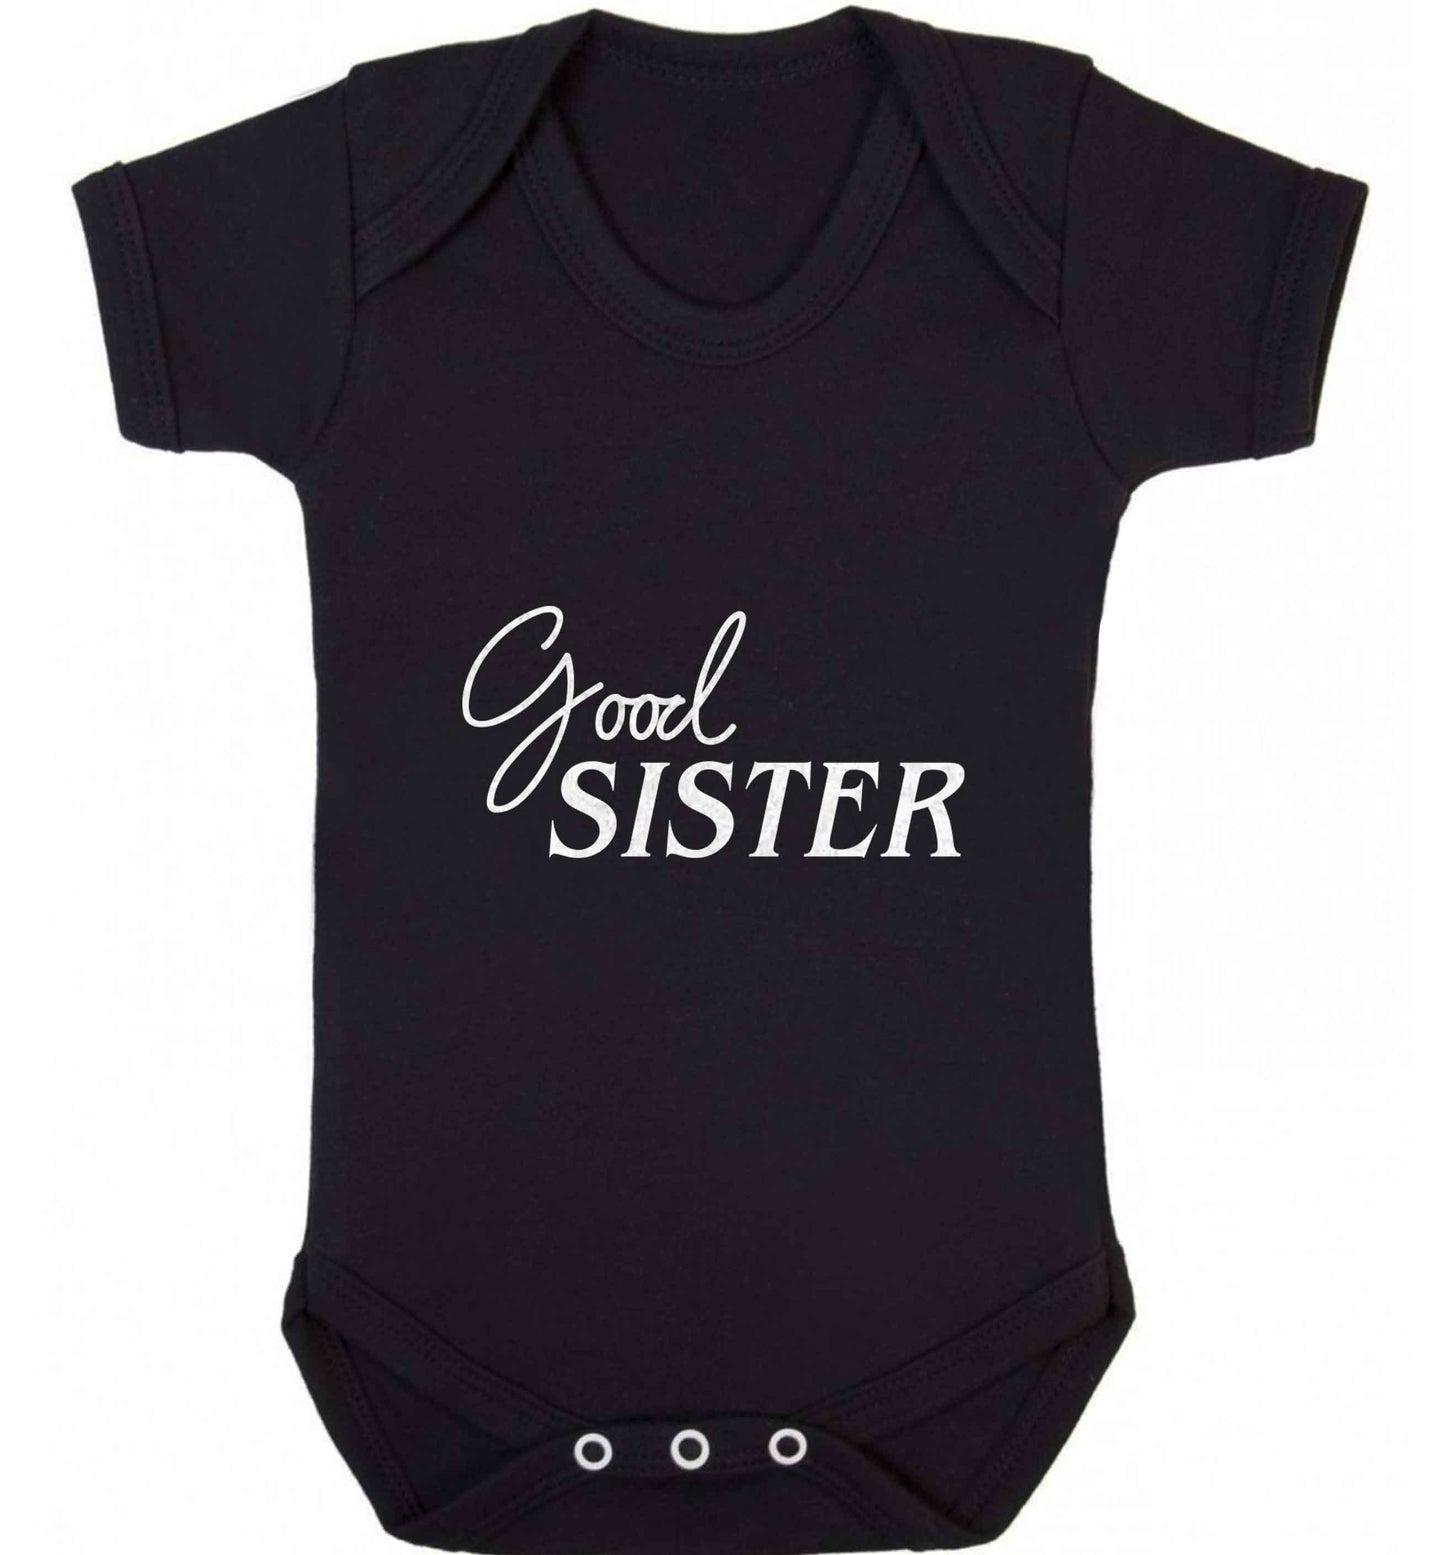 Good sister baby vest black 18-24 months